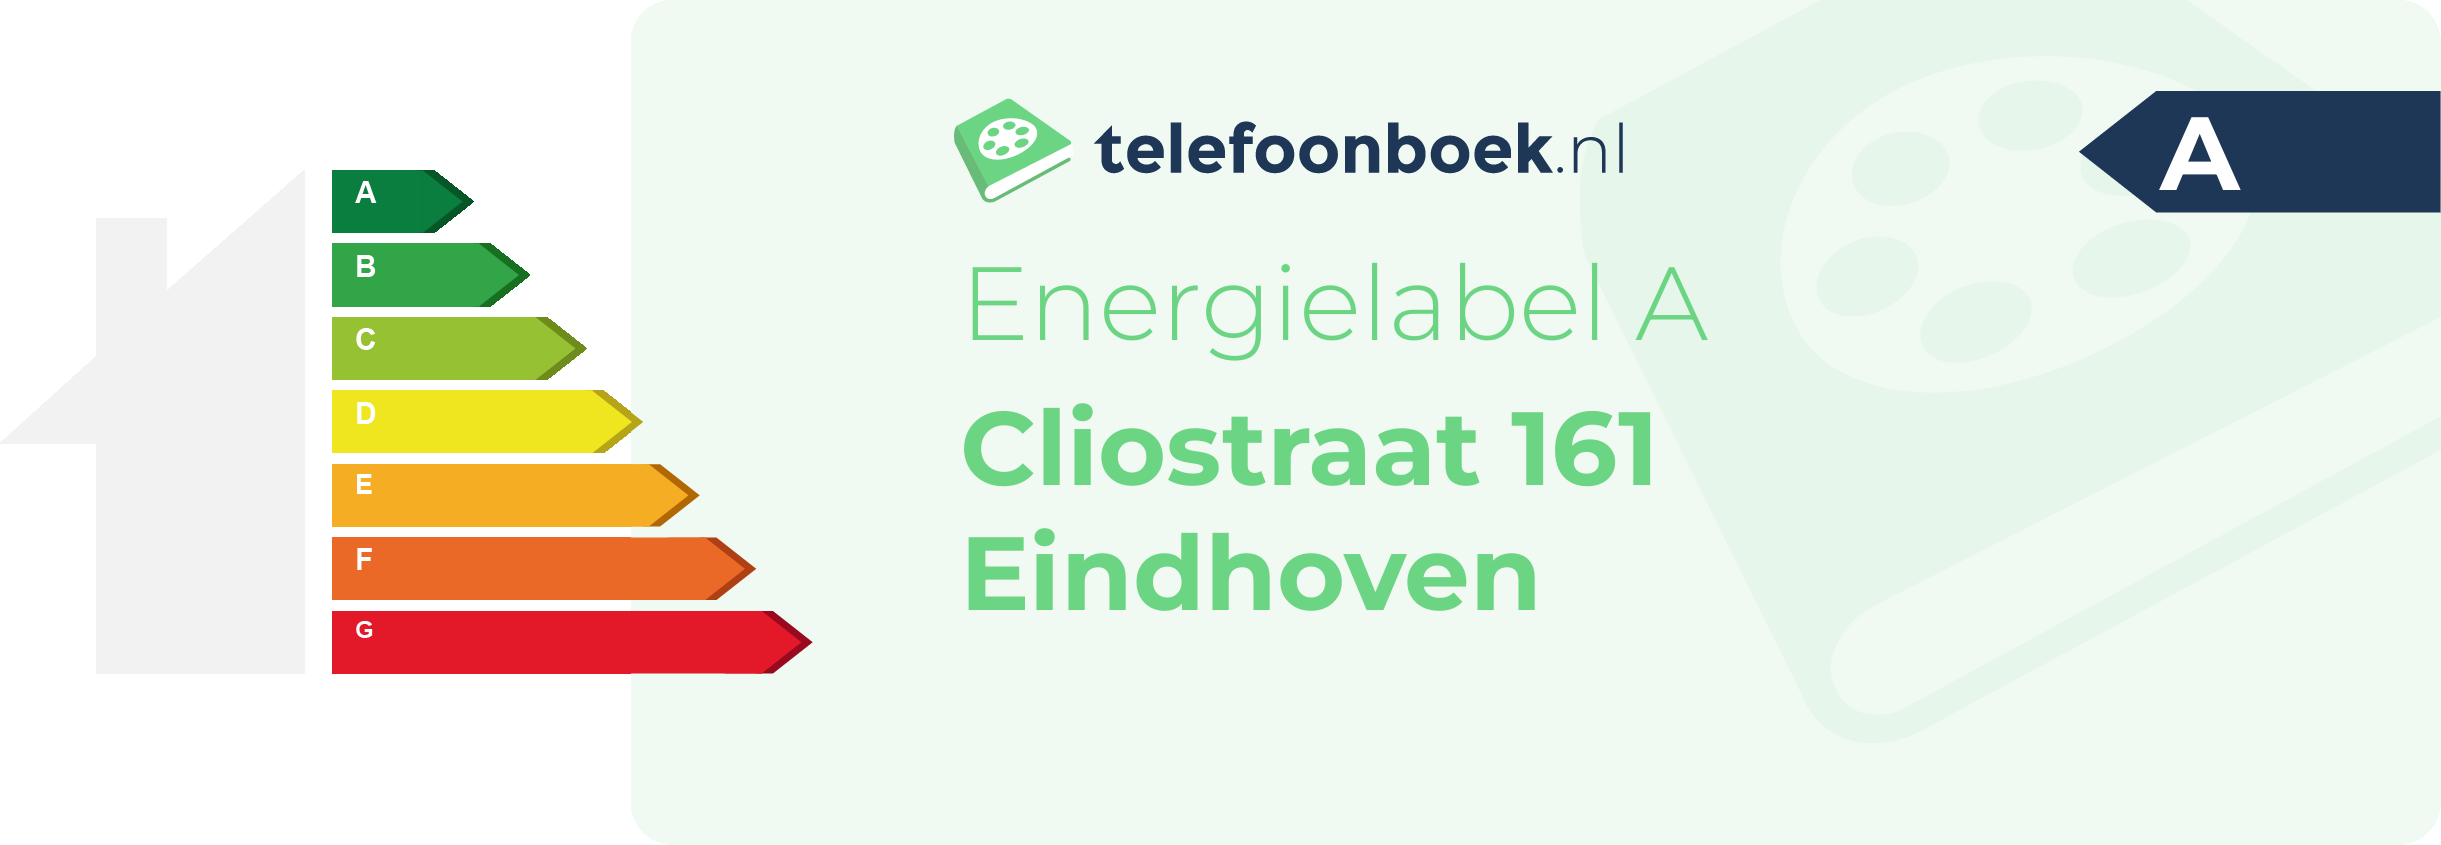 Energielabel Cliostraat 161 Eindhoven